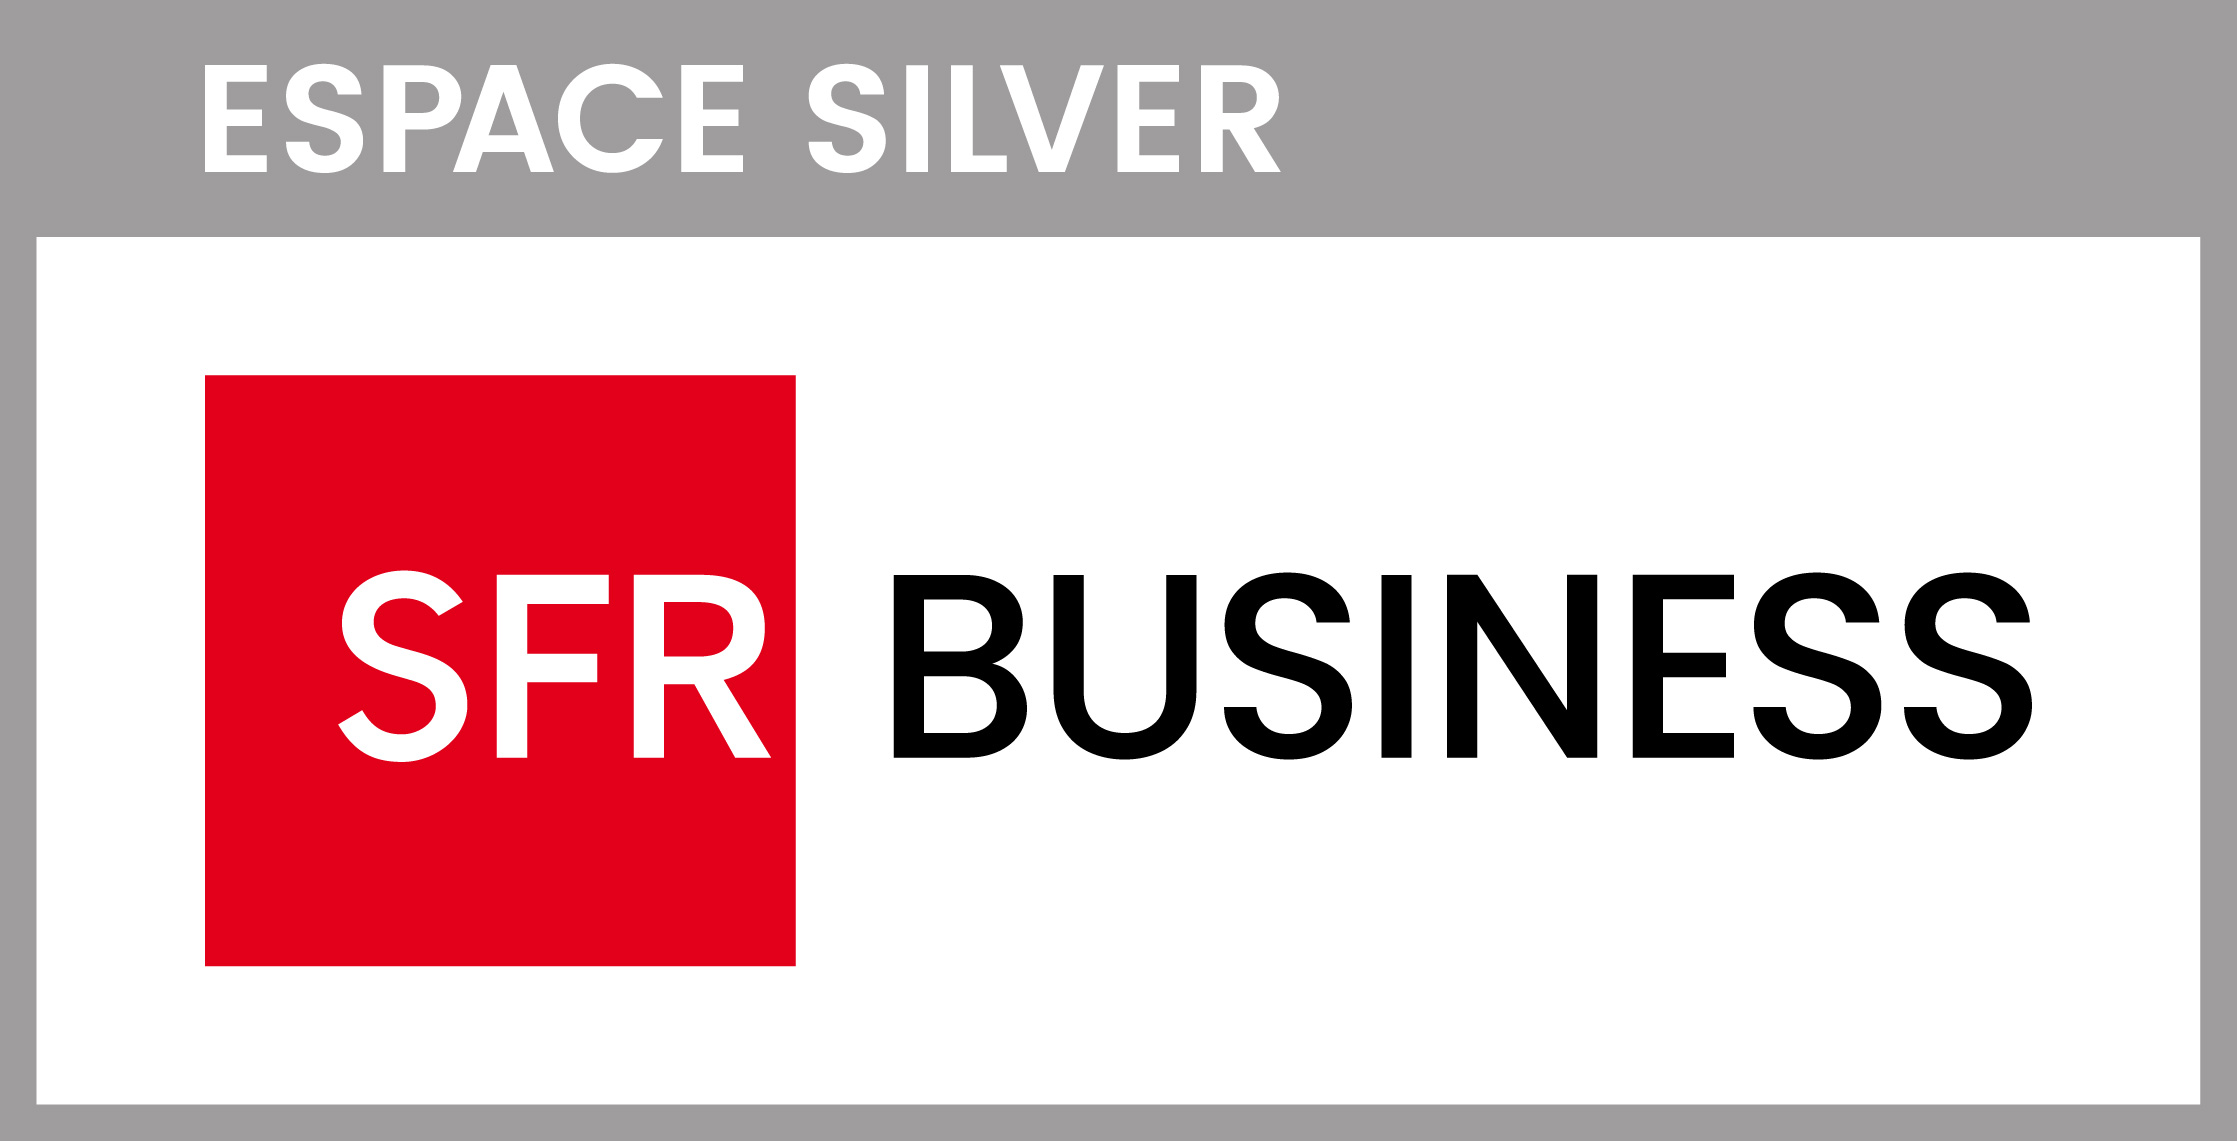 ESPACE_SILVER_SFR_BUSINESS_Logo_RVB